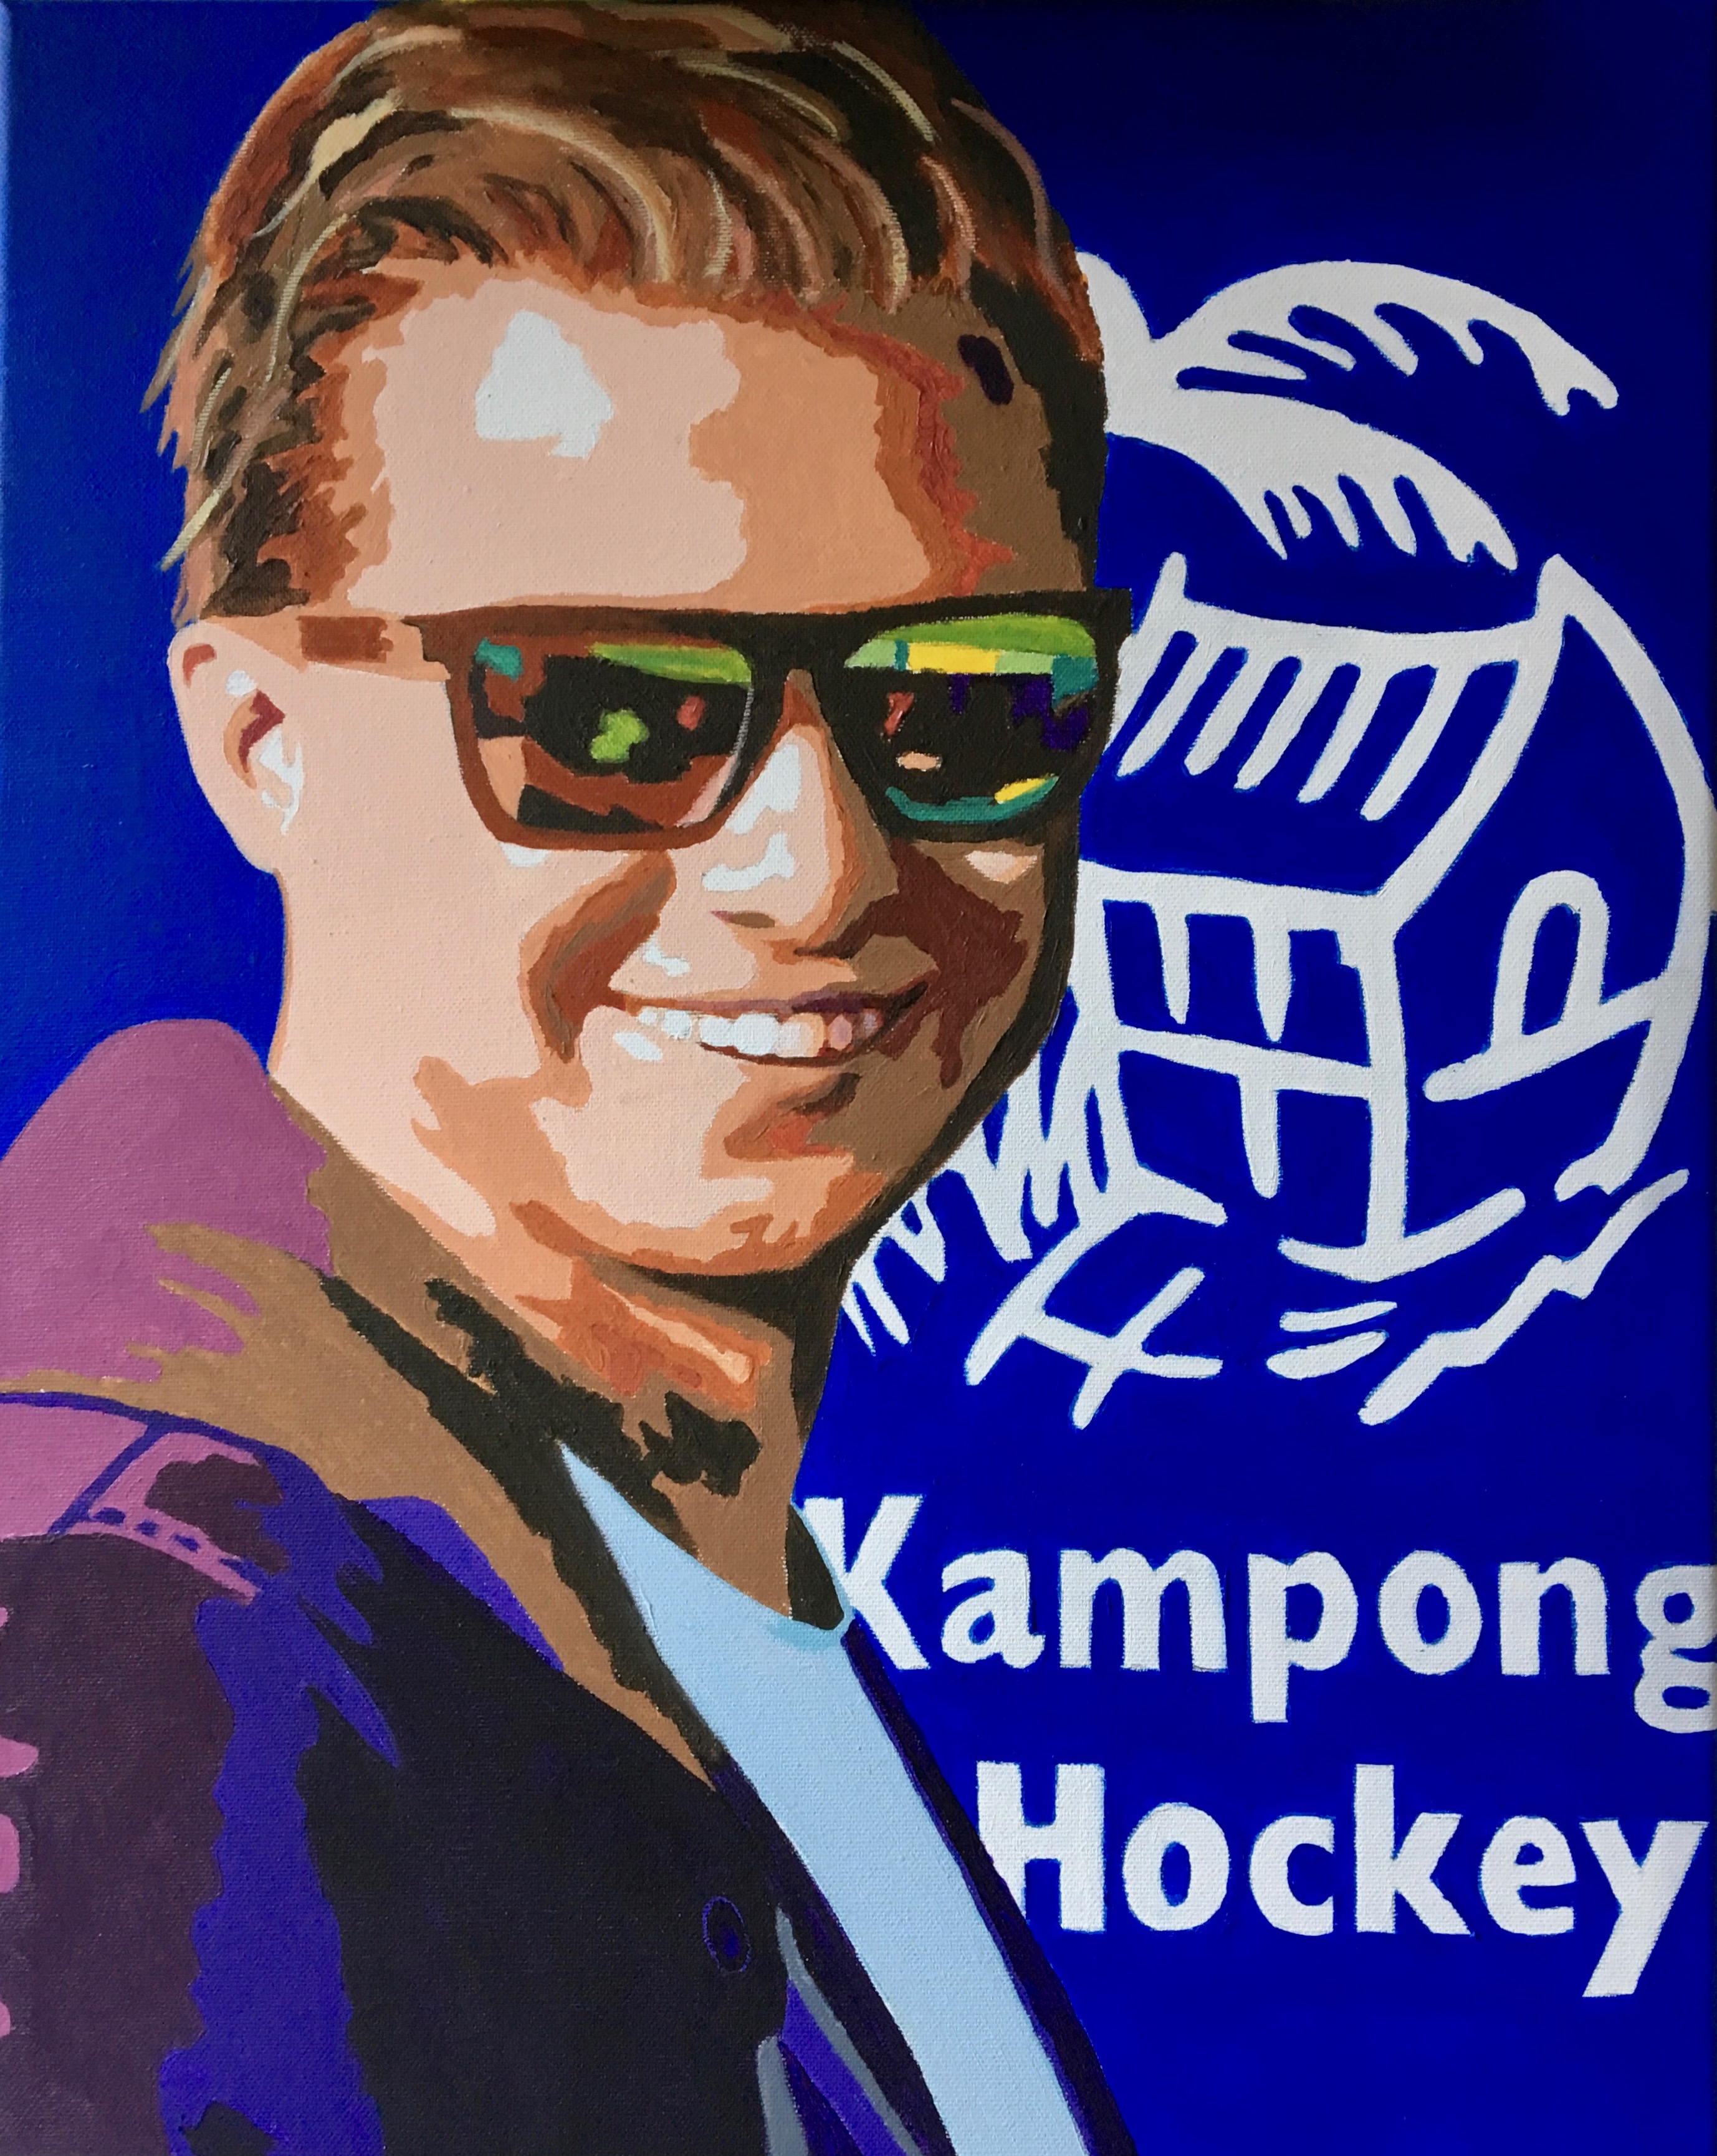 HC Kampong coach Teun